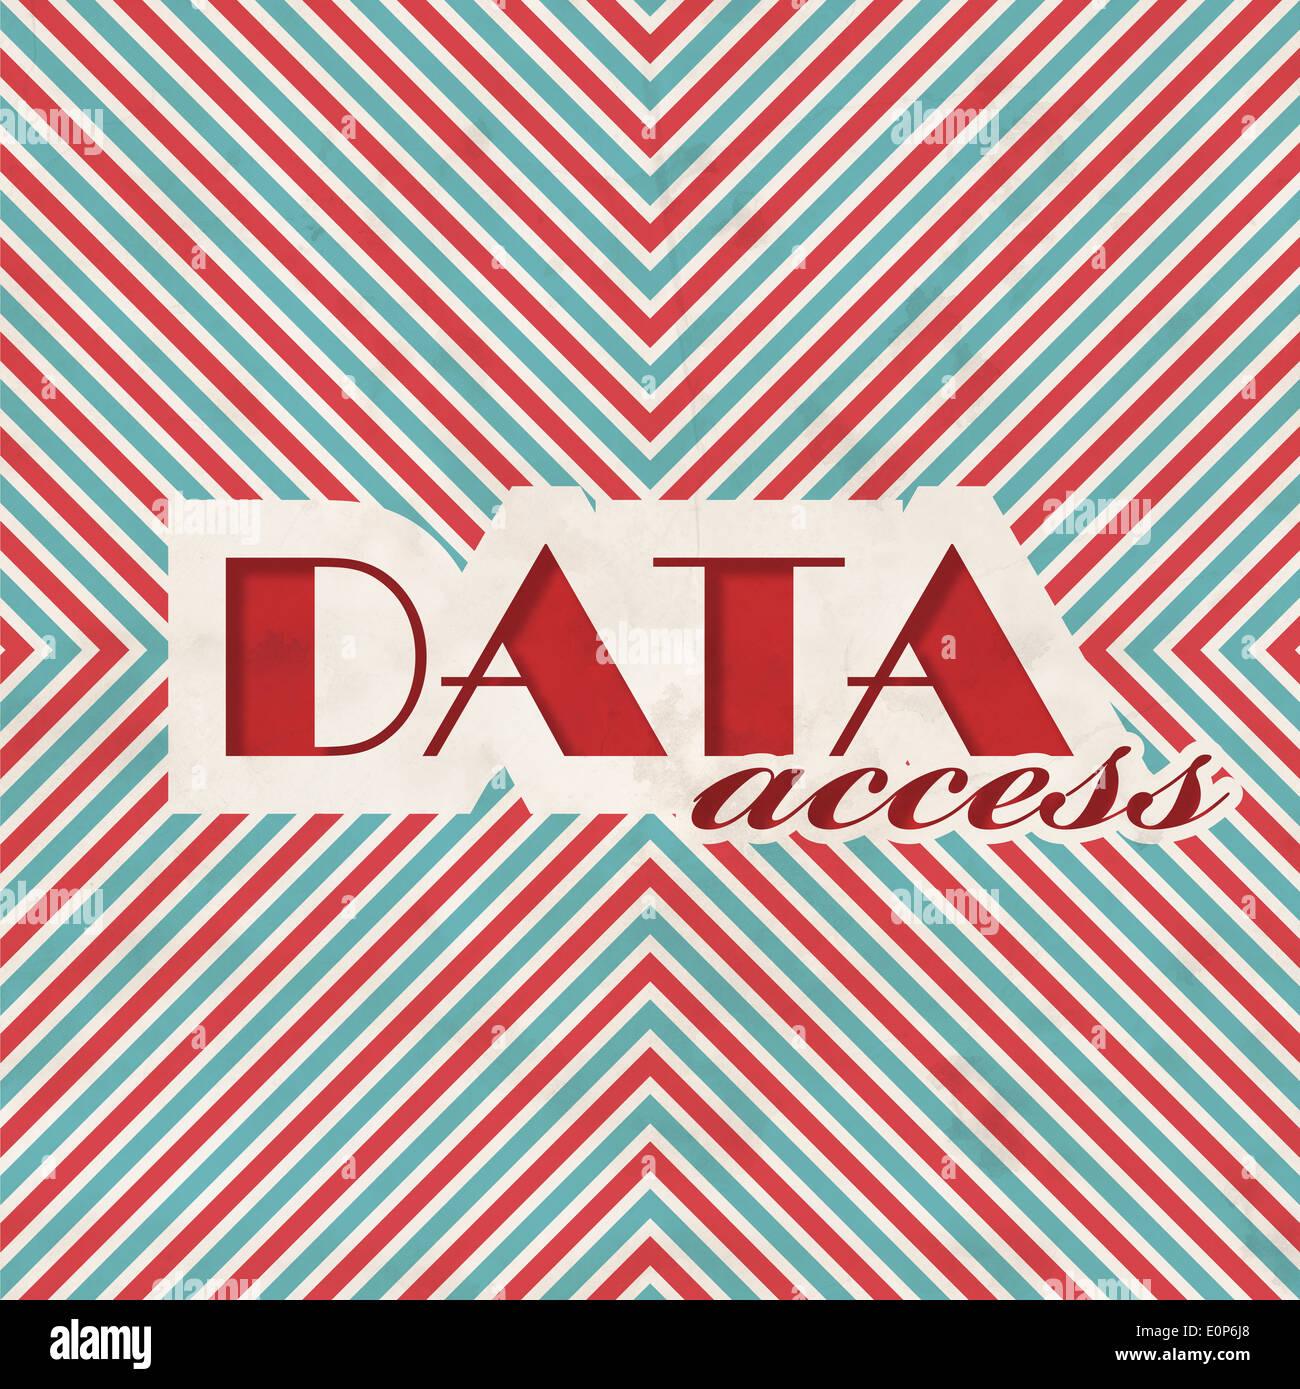 Data Access. Retro Design Concept. Stock Photo